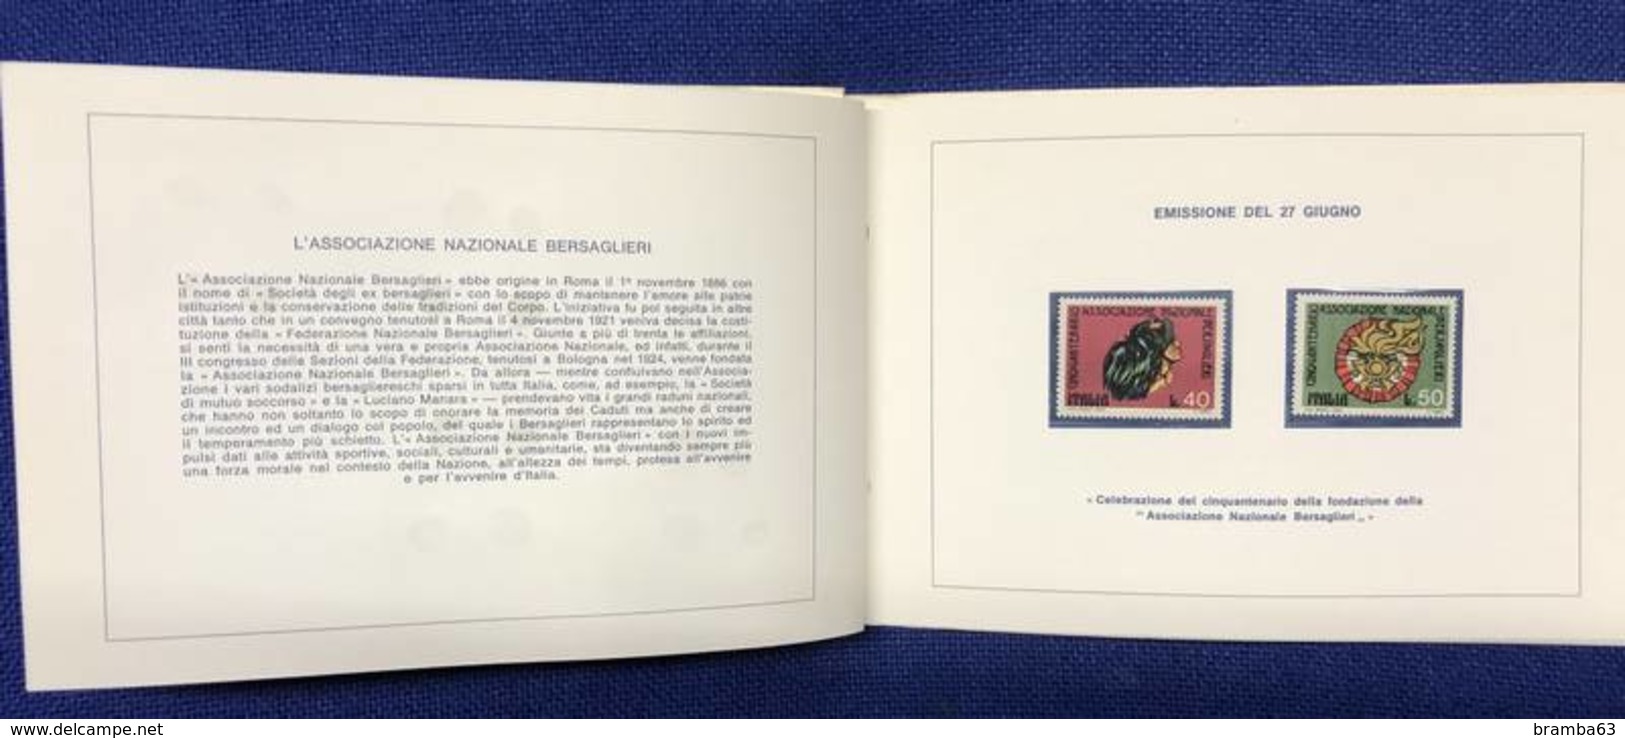 1974 Libretto francobolli emessi amministrazione postale italiana - completo nuovo (come da scansione)